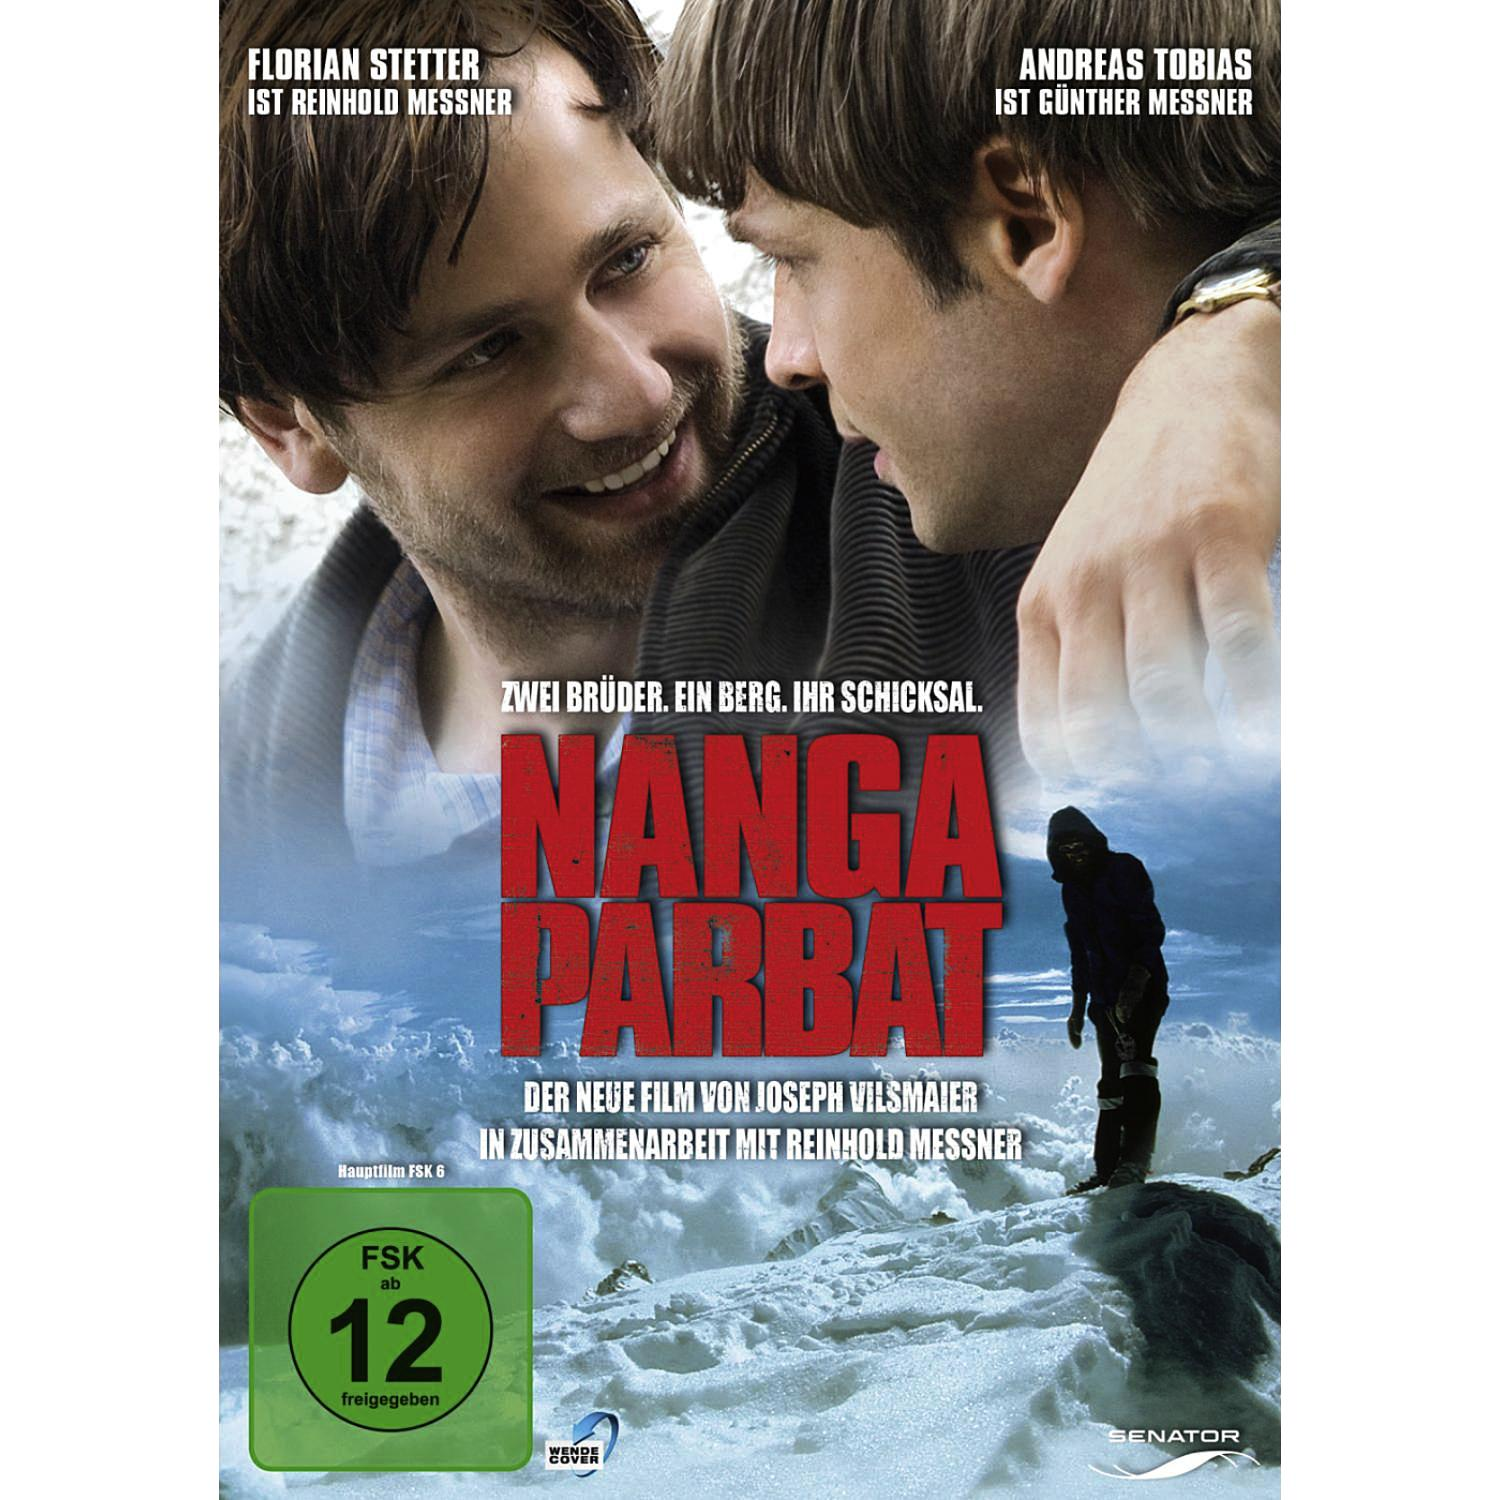 Nanga DVD Parbat